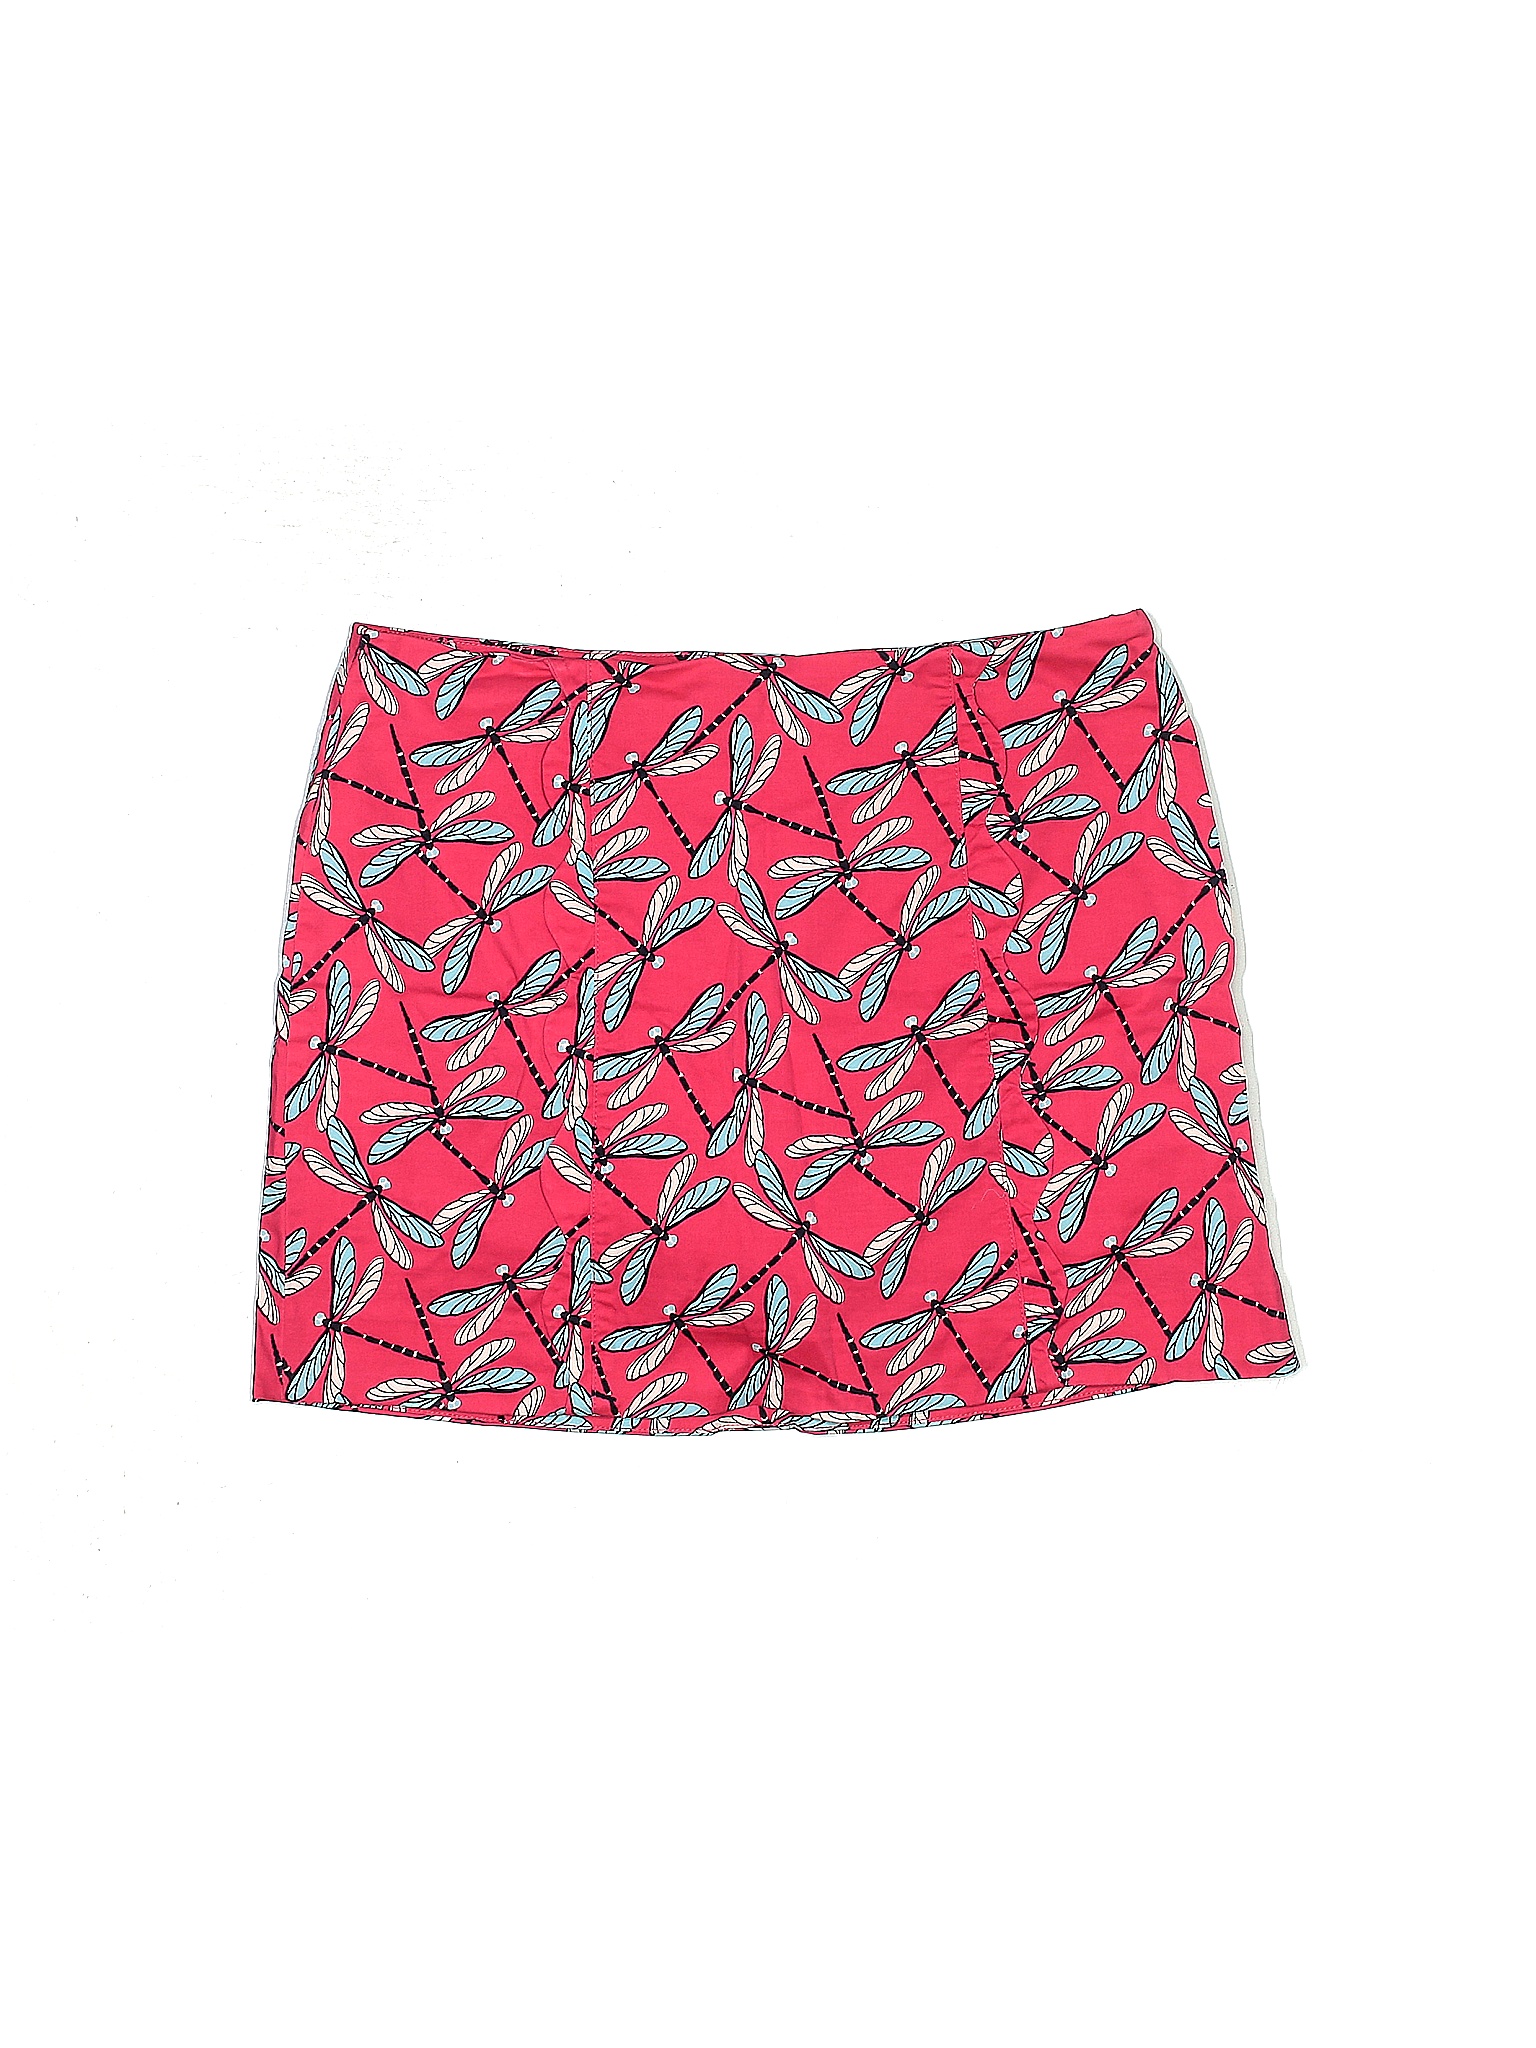 Crown & Ivy Colored Pink Skort Size 10 - 60% off | thredUP